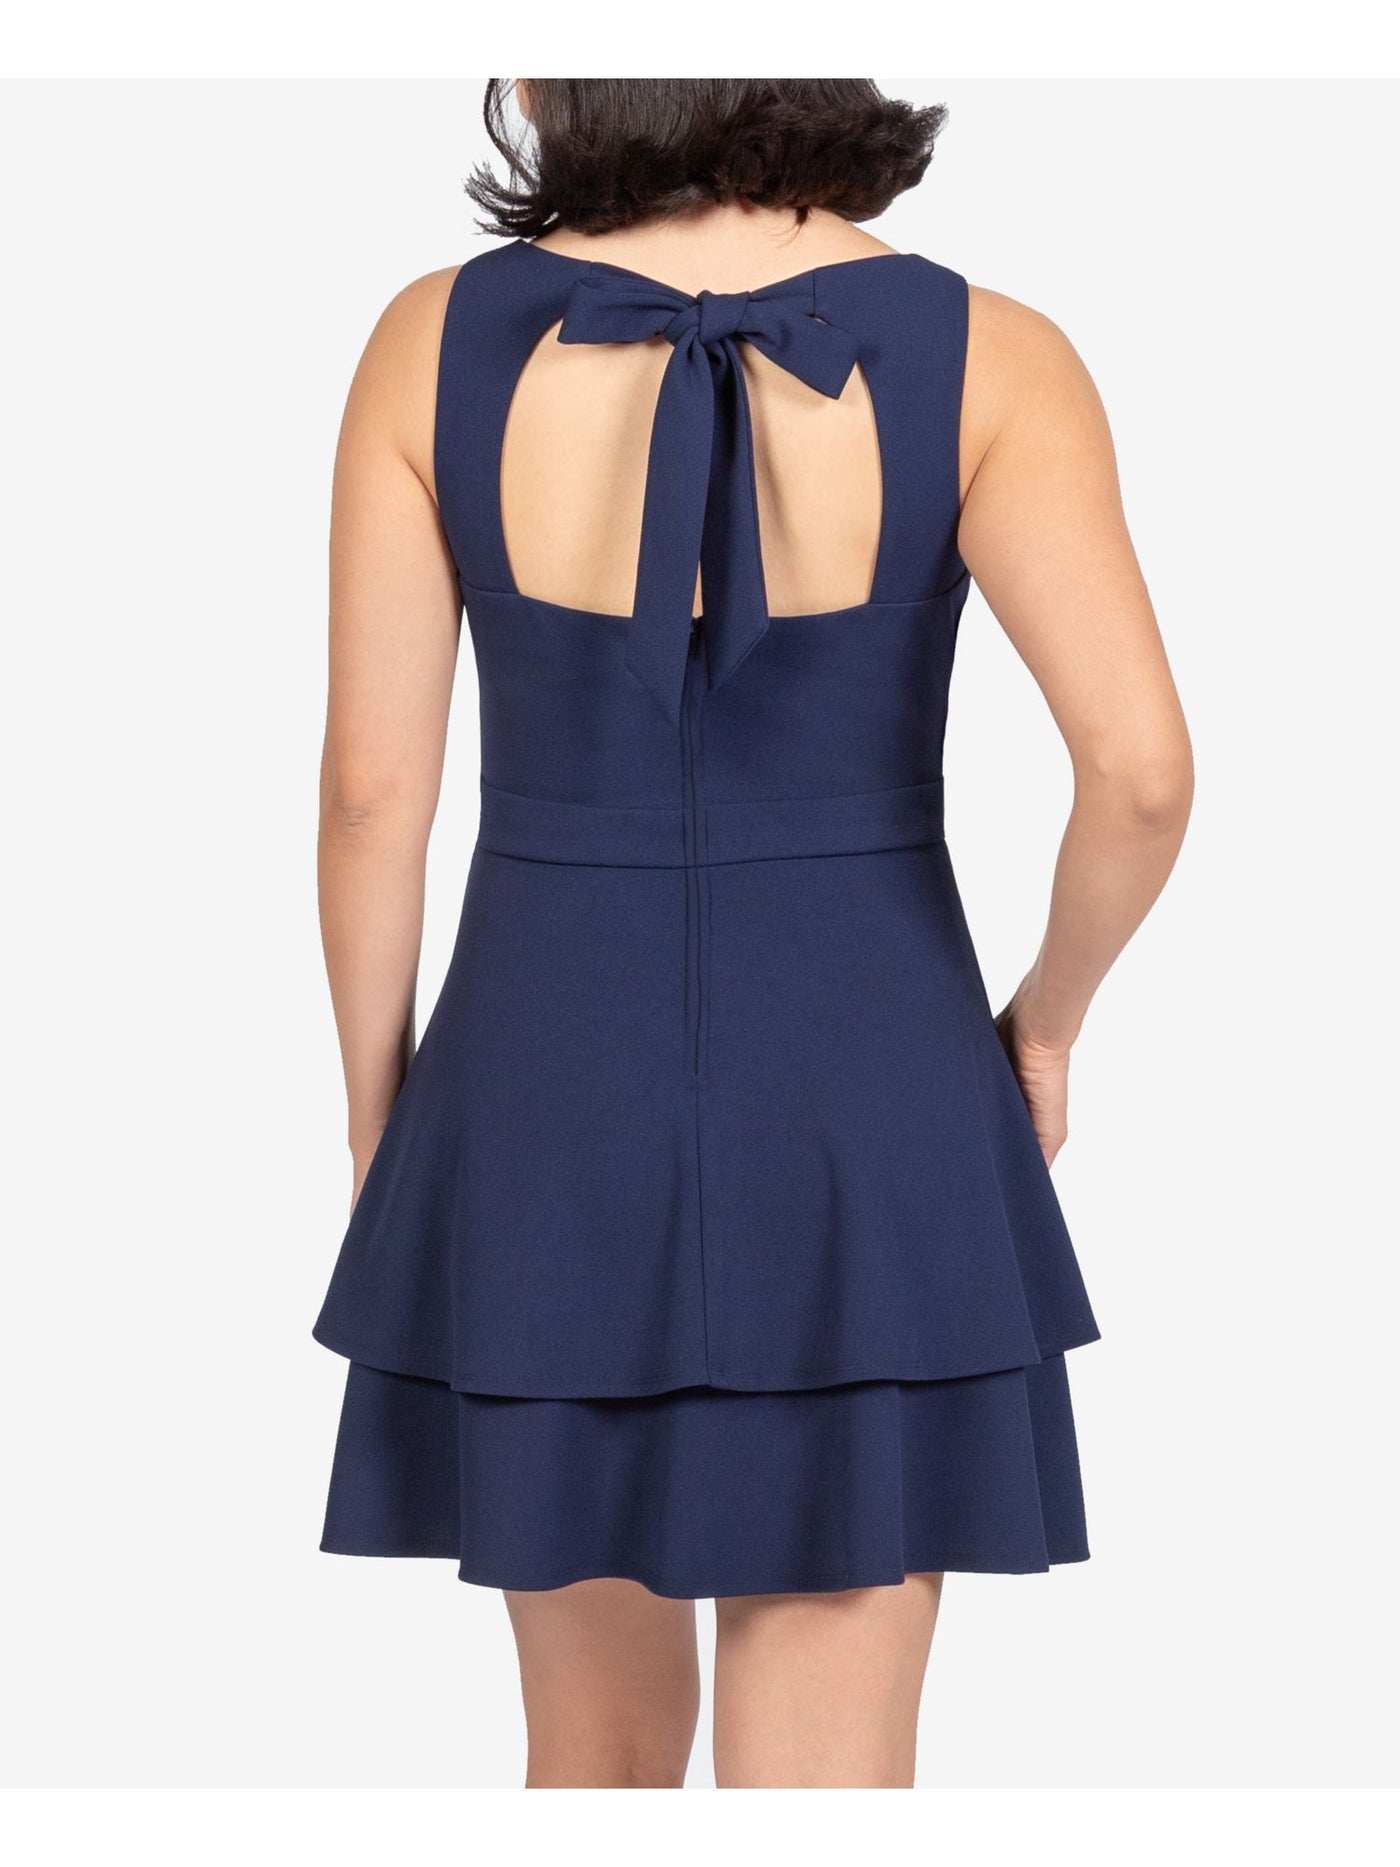 B DARLIN Womens Sleeveless Square Neck Mini Fit + Flare Dress